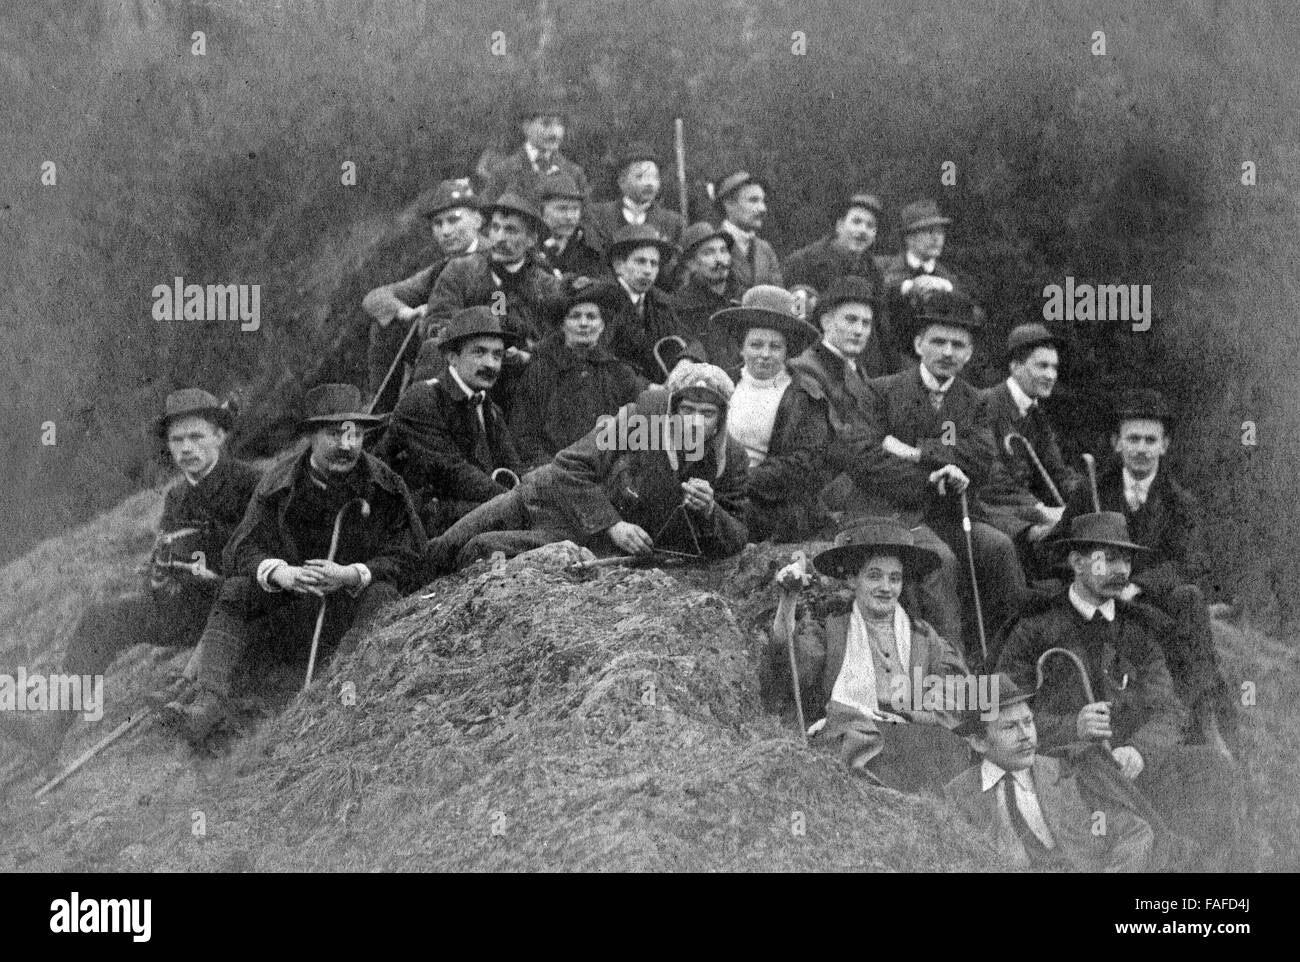 Gruppe der Naturfreunde Cöln bei einem auf einem Gruppenfoto Heuhaufen, Deutschland 1910er Jahre. Groupe d'Naturfreunde sur un tas de foin, l'Allemagne des années 1910. Banque D'Images